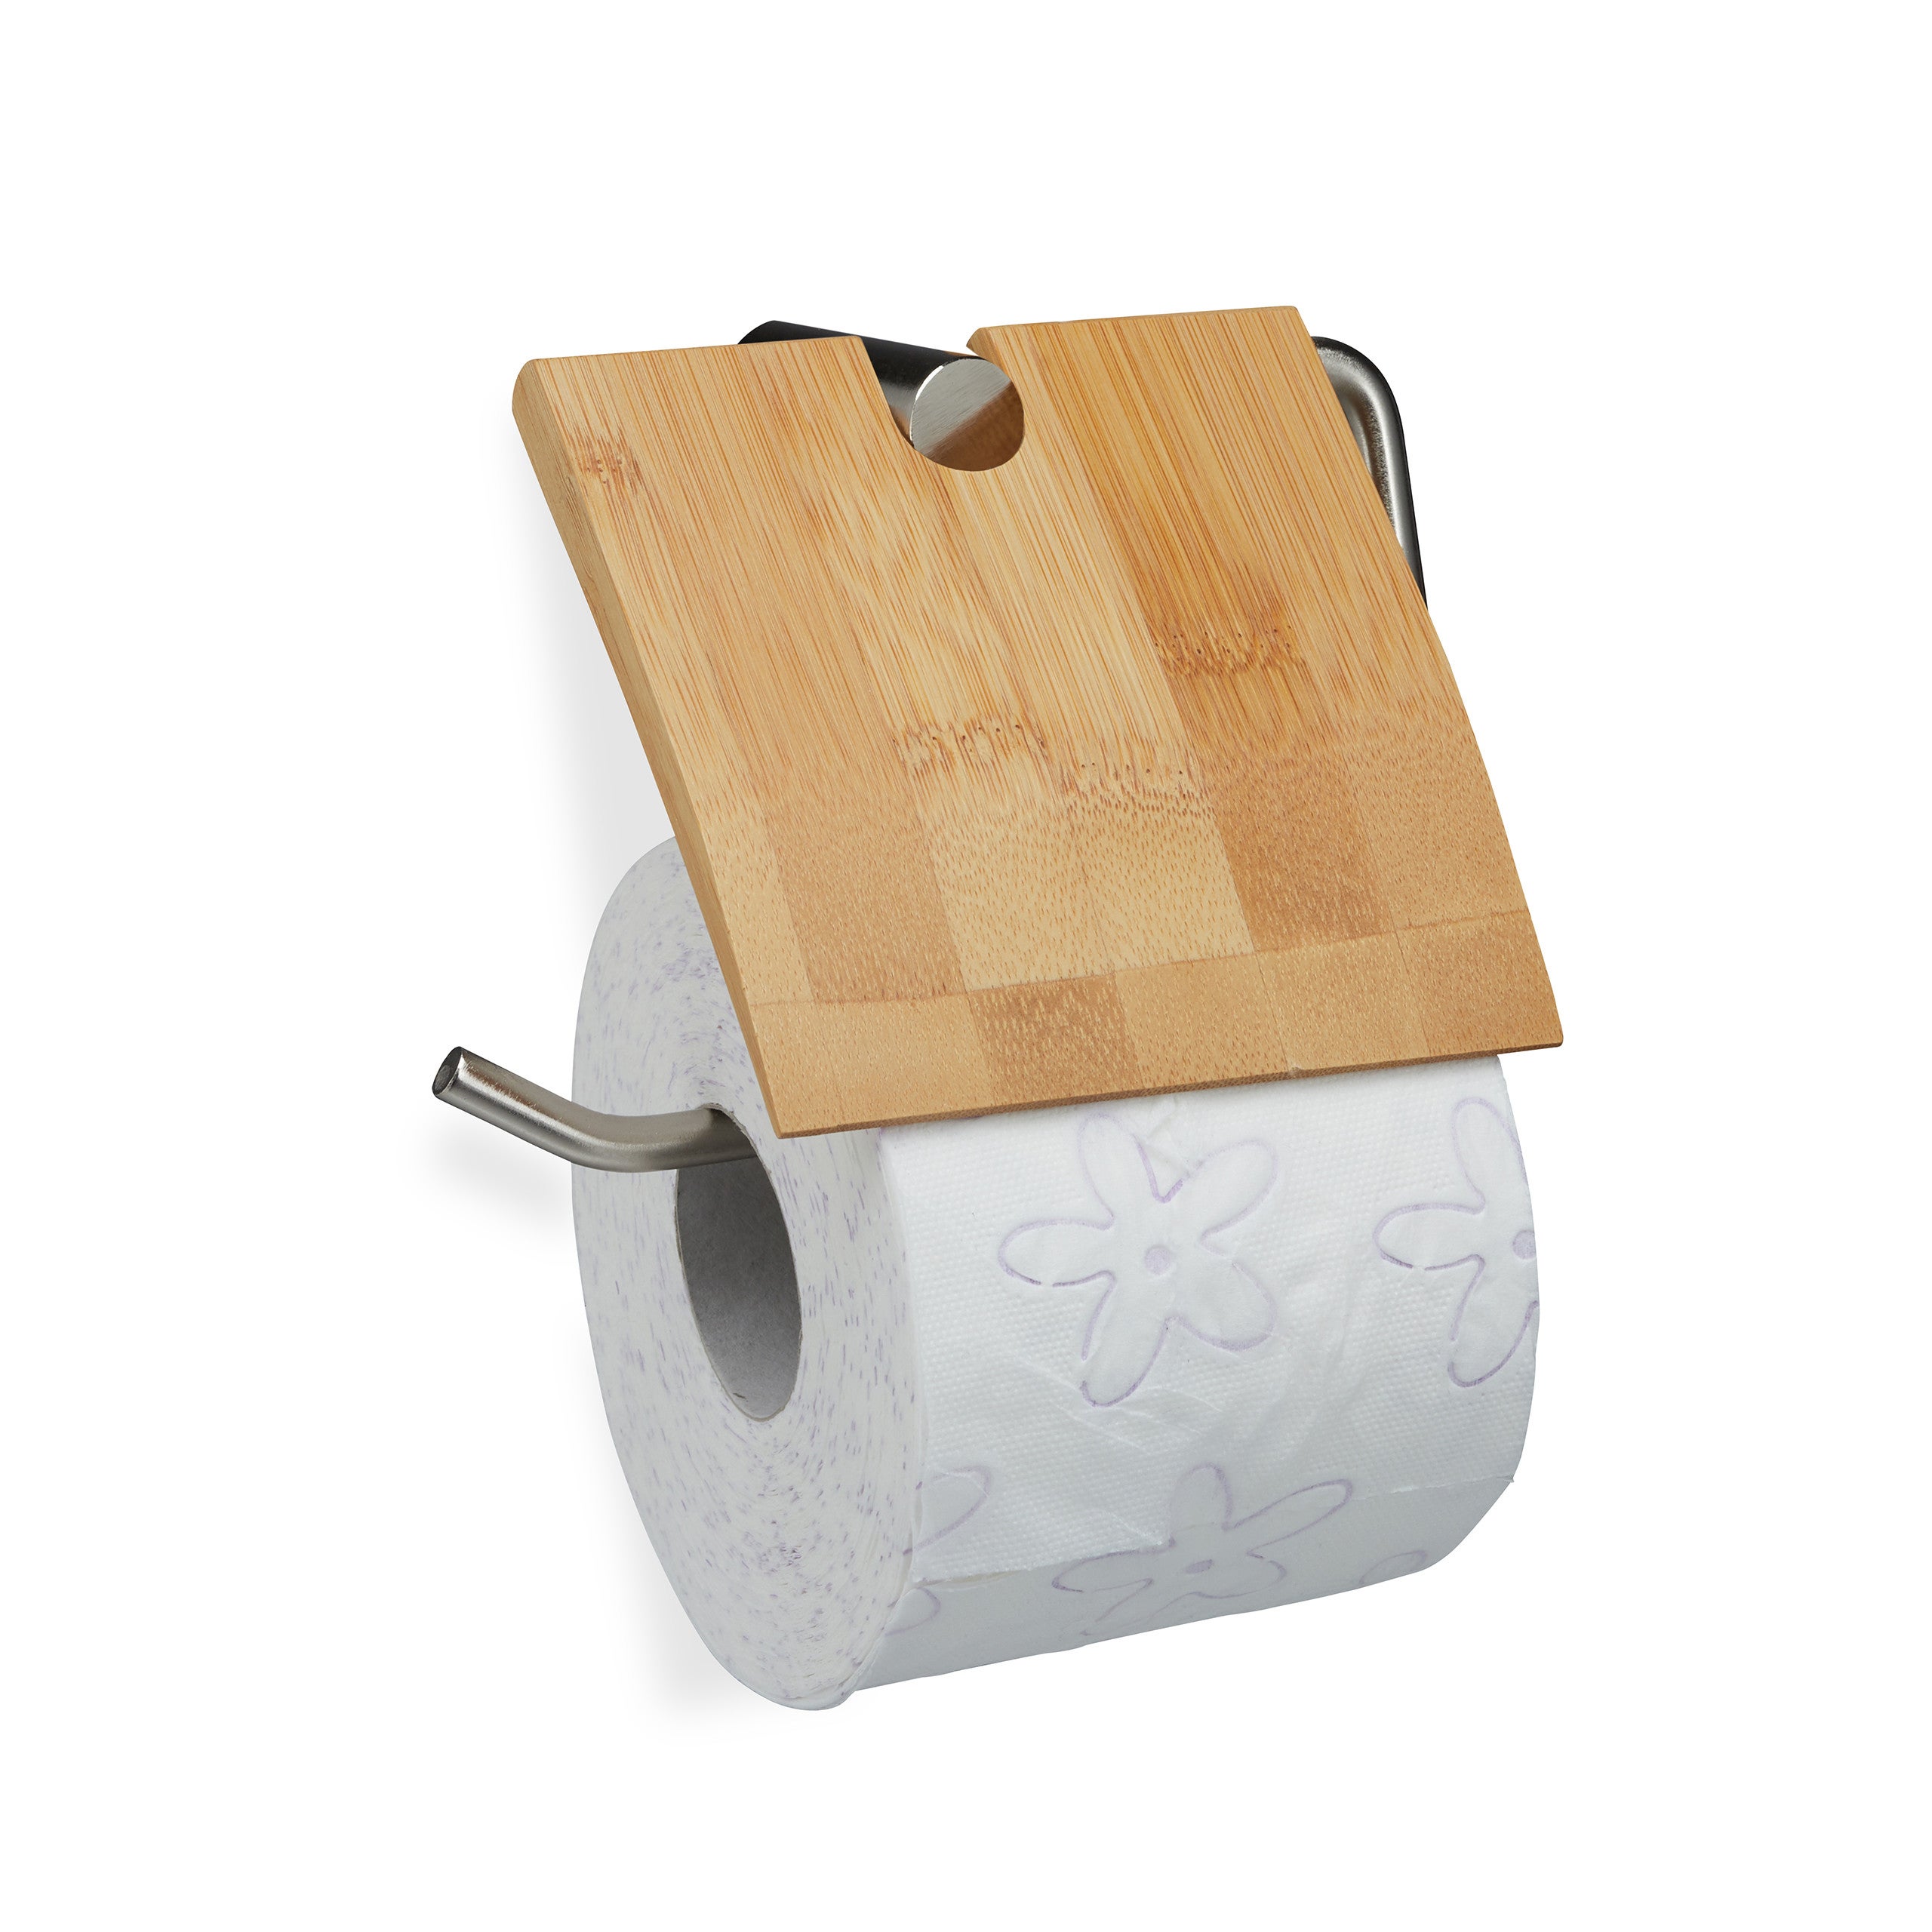 Acheter ICI un support en bambou pour papier toilette